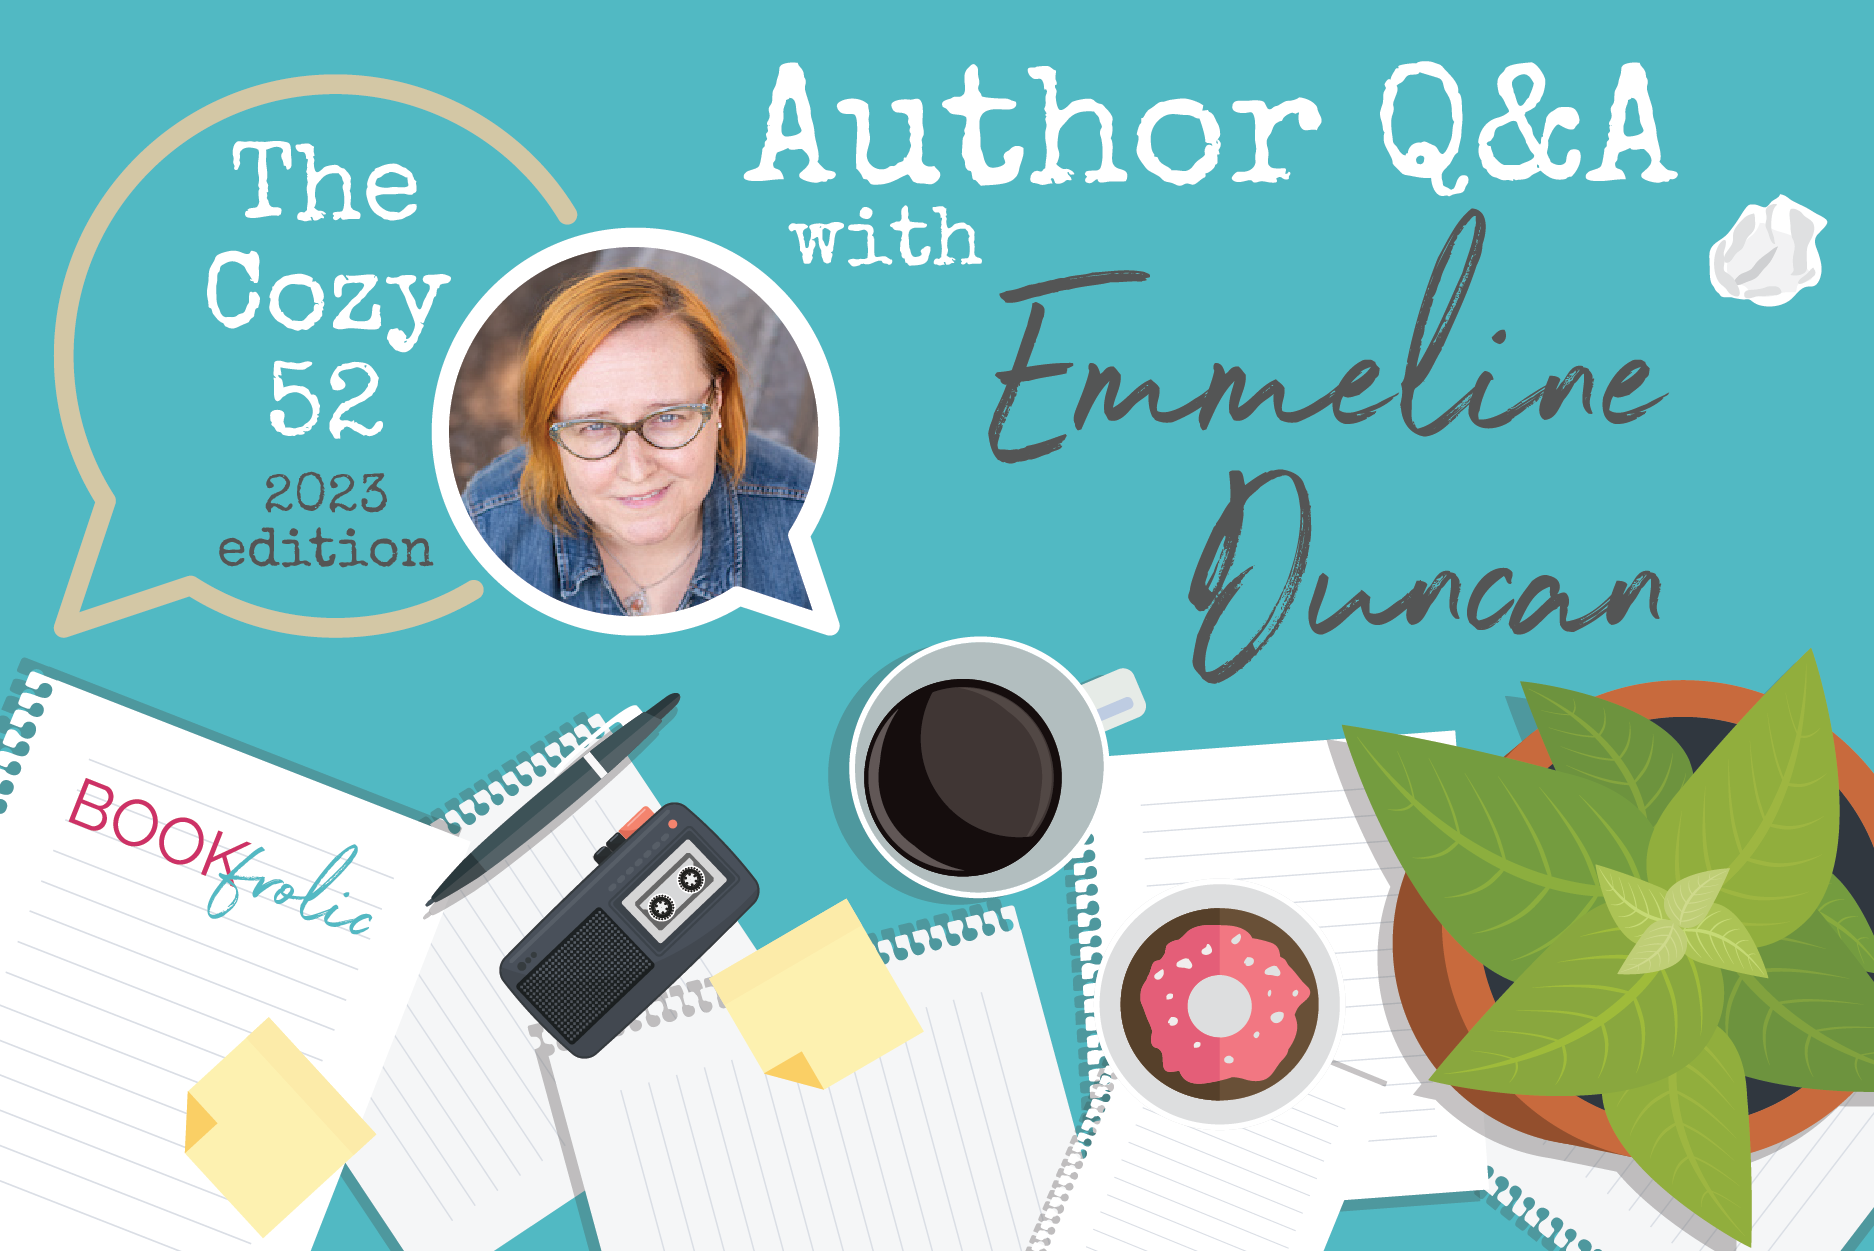 blog banner for interview with Emmeline Duncan